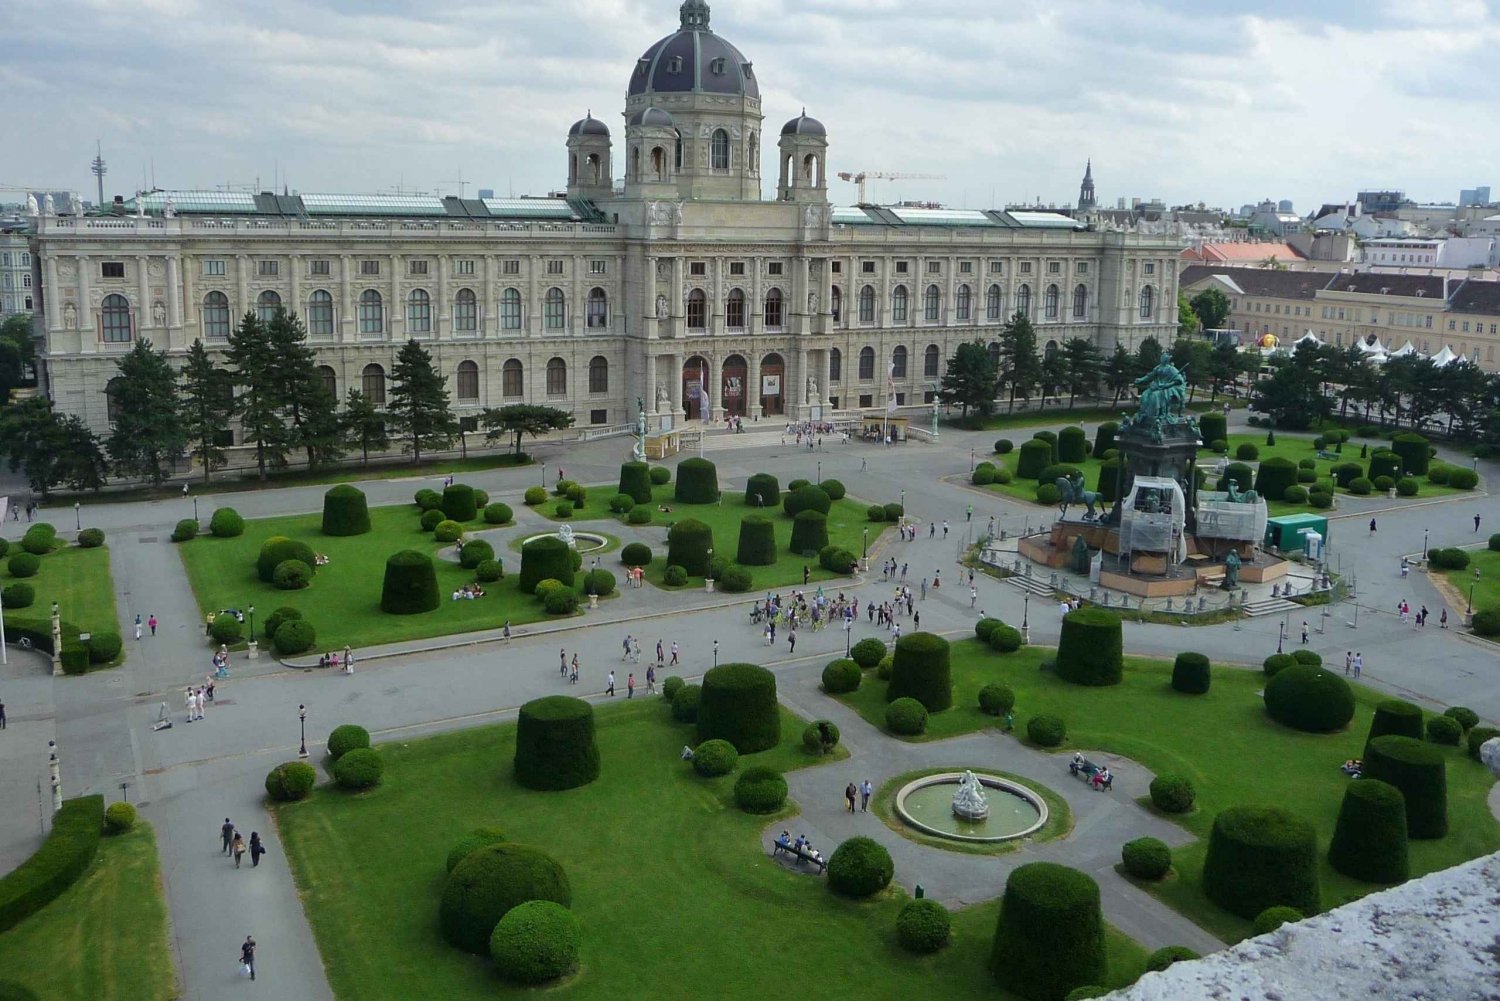 Wien zu Fuß: Entdecke die Top 10 Sehenswürdigkeiten